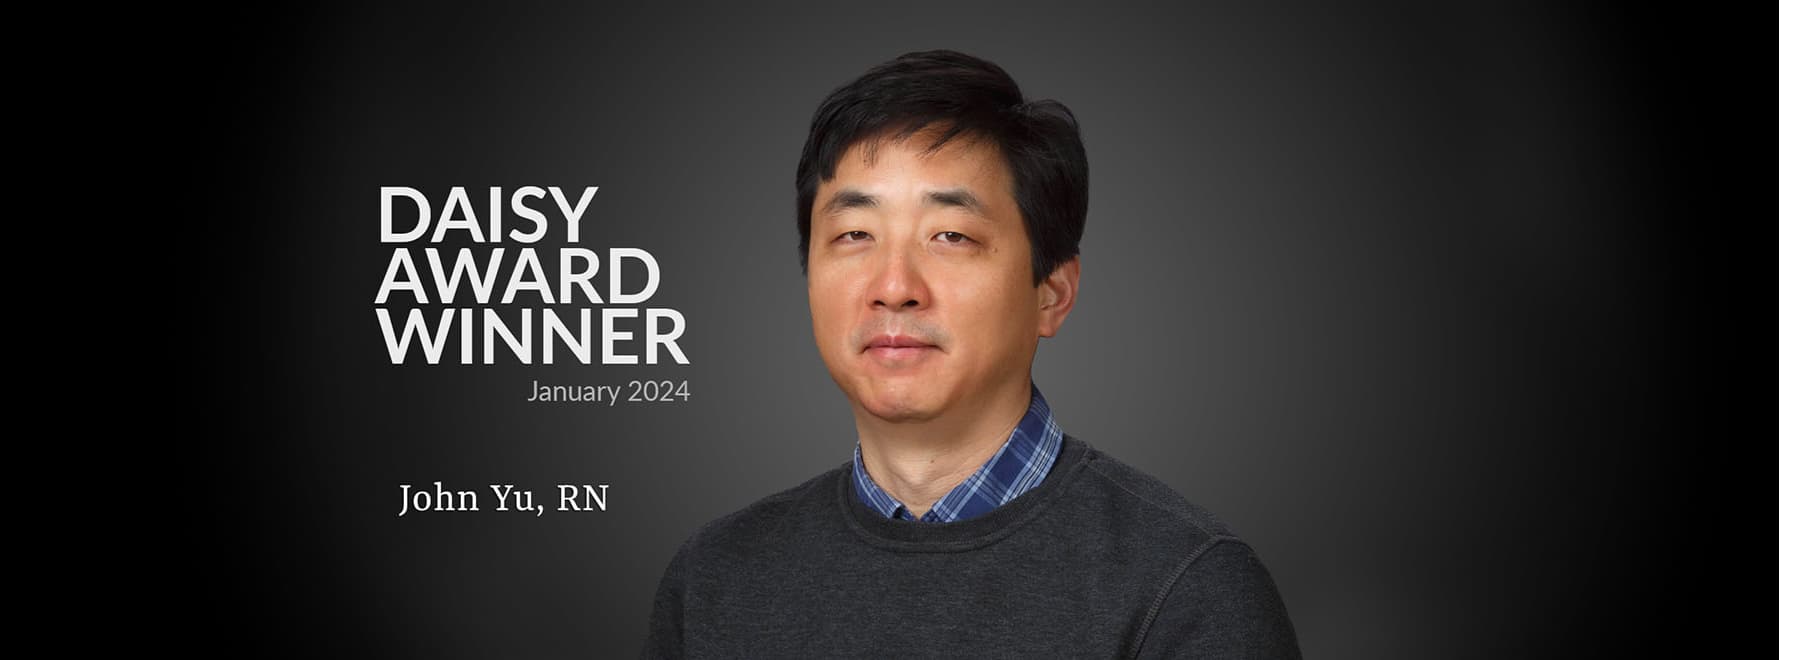 DAISY Award Winner, January 2024, John Yu, RN